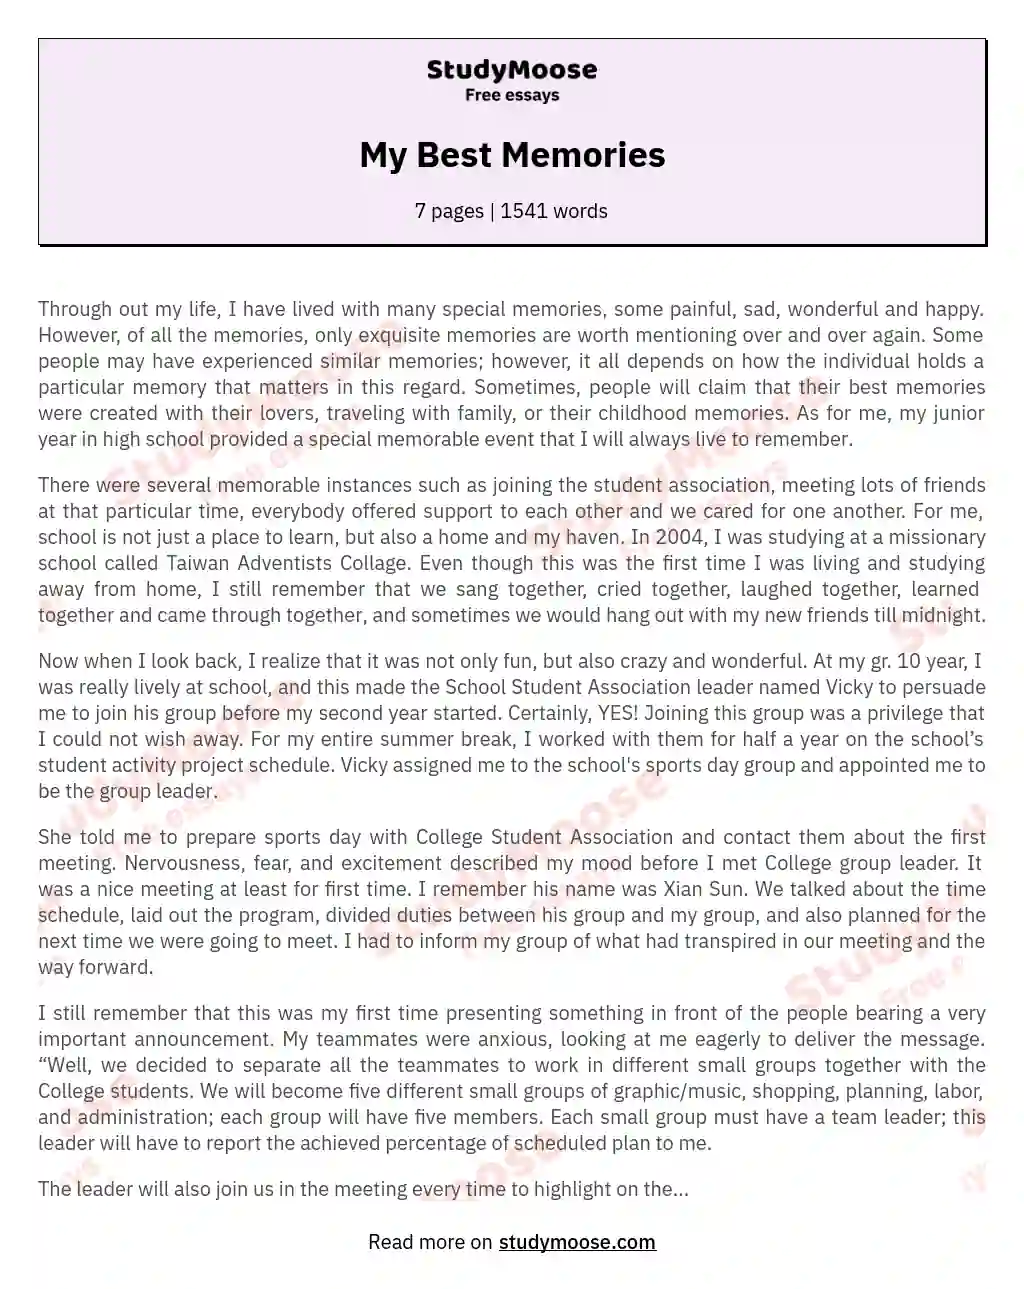 My Best Memories essay